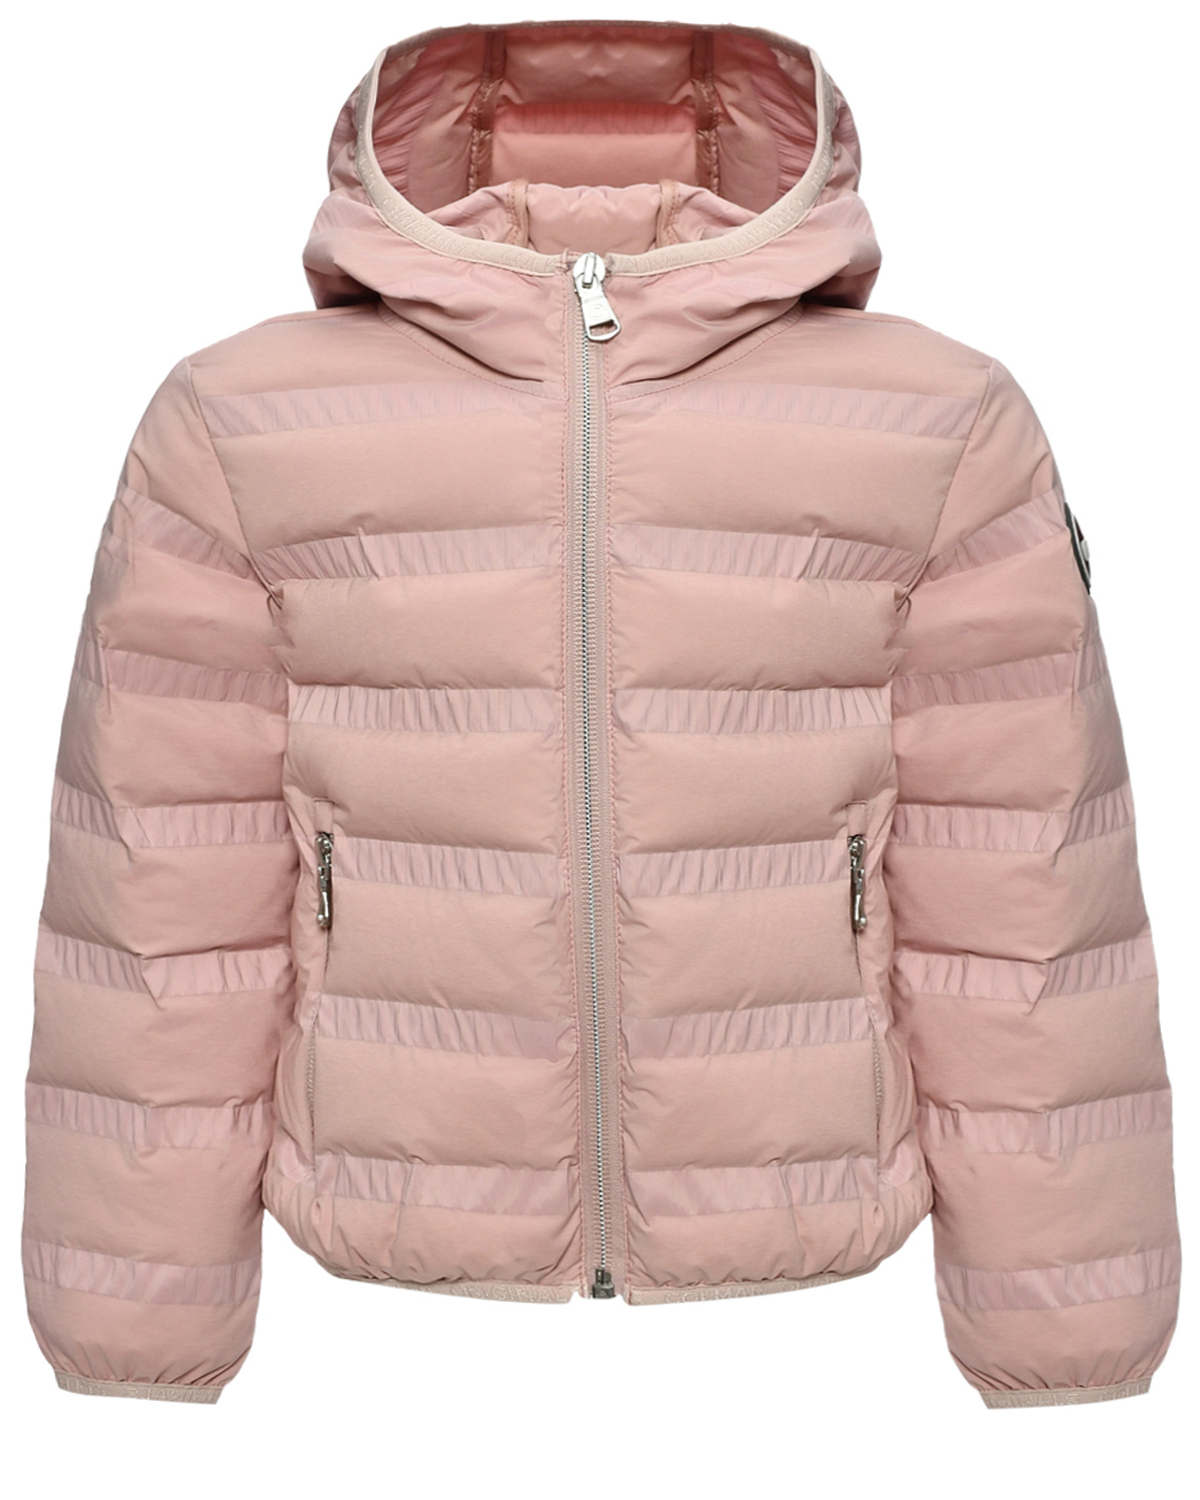 Стеганая куртка с капюшоном, розовая Colmar Junior, размер 128, цвет нет цвета - фото 1